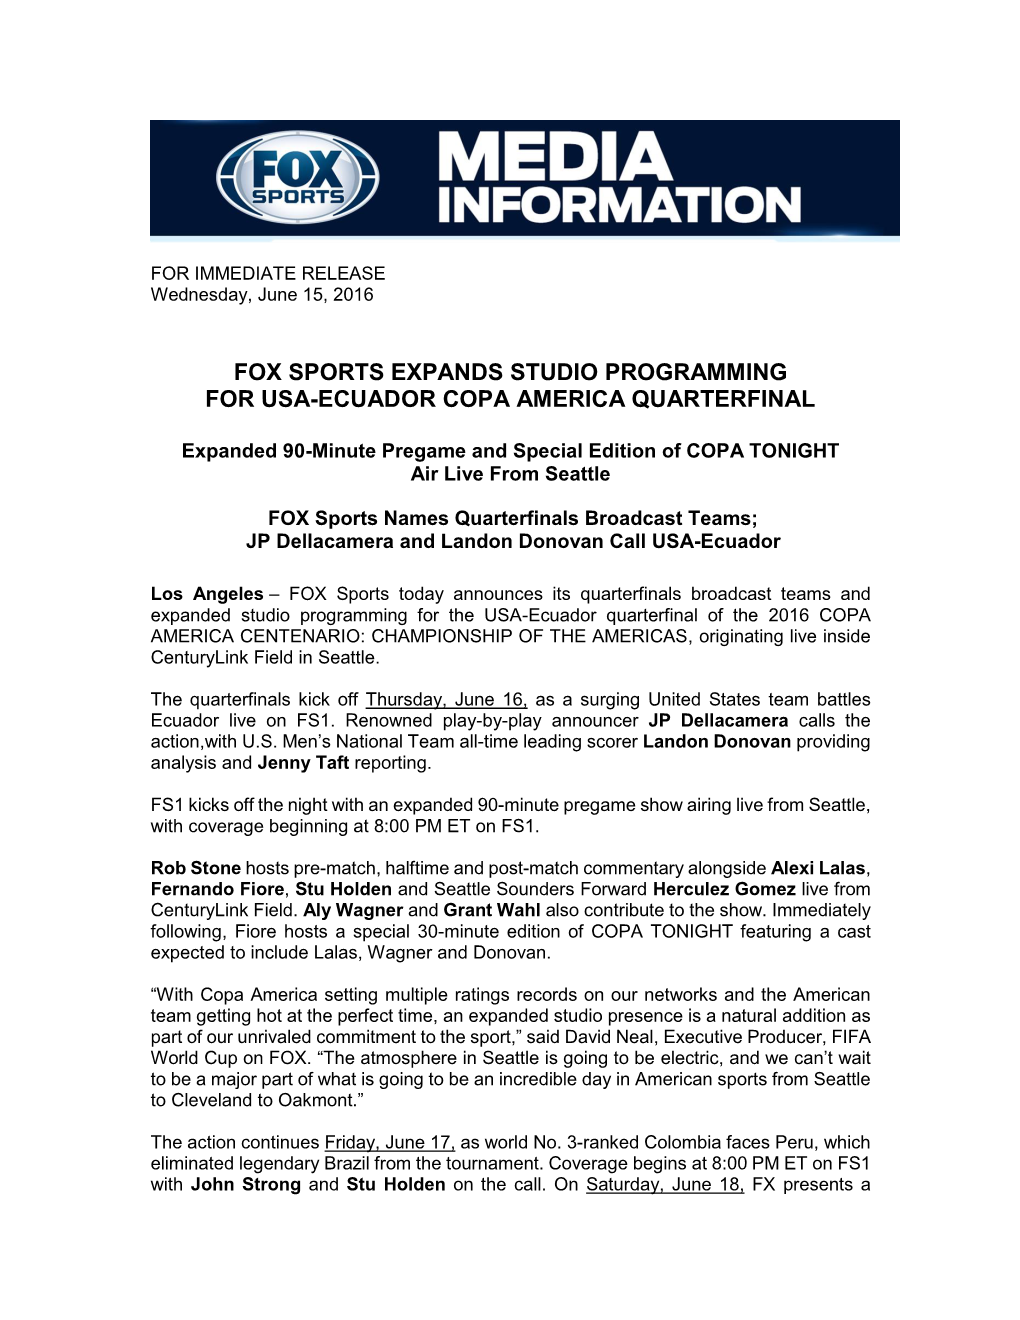 Fox Sports Expands Studio Programming for Usa-Ecuador Copa America Quarterfinal